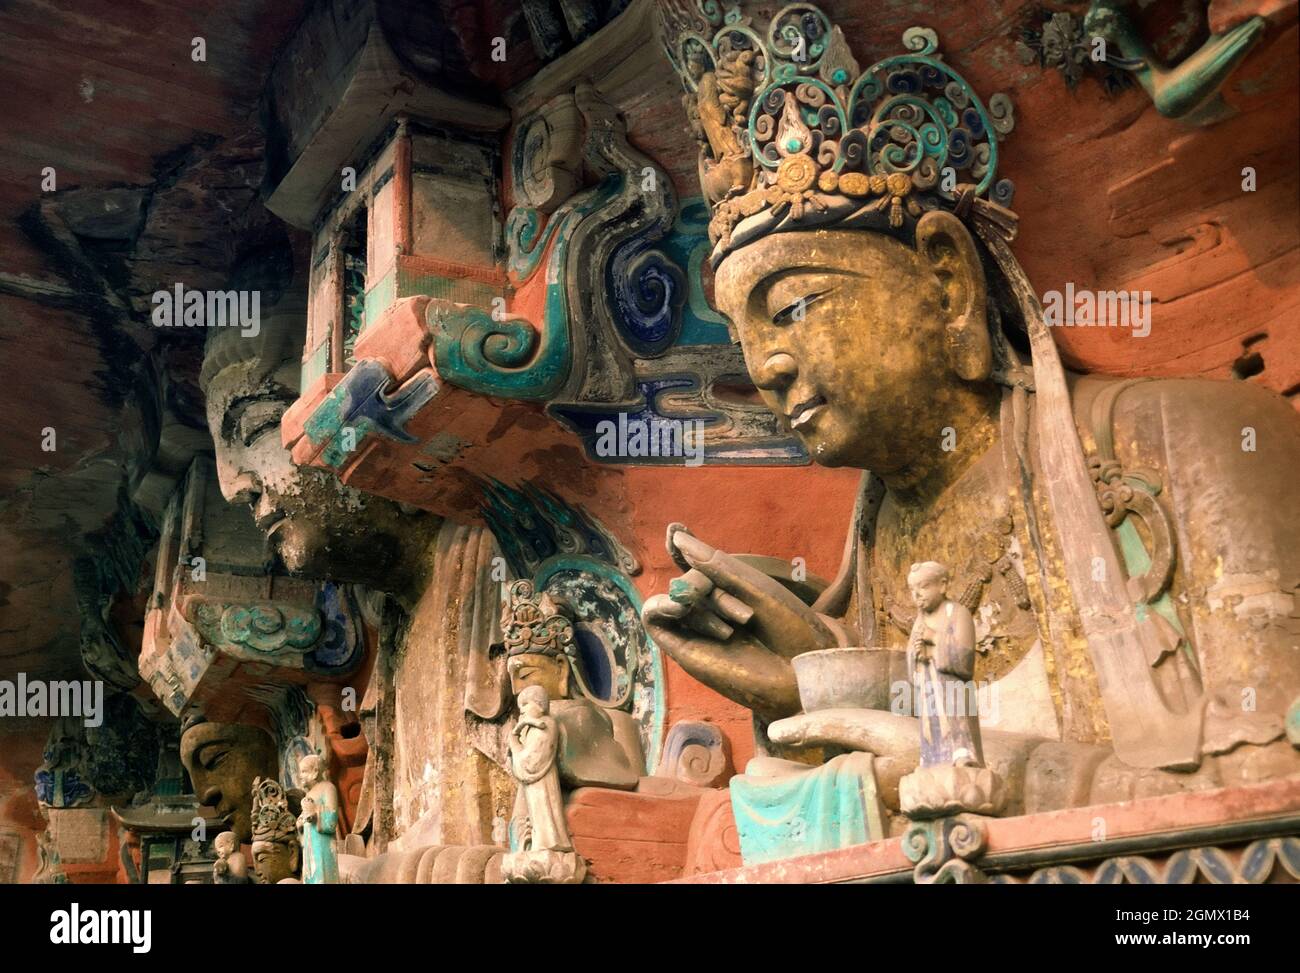 Chongqing, Sichuan, Chine - décembre 1997 les sculptures spectaculaires de Dazu Rock dans le Sichuan sont une série variée de sculptures religieuses chinoises et de carvi Banque D'Images